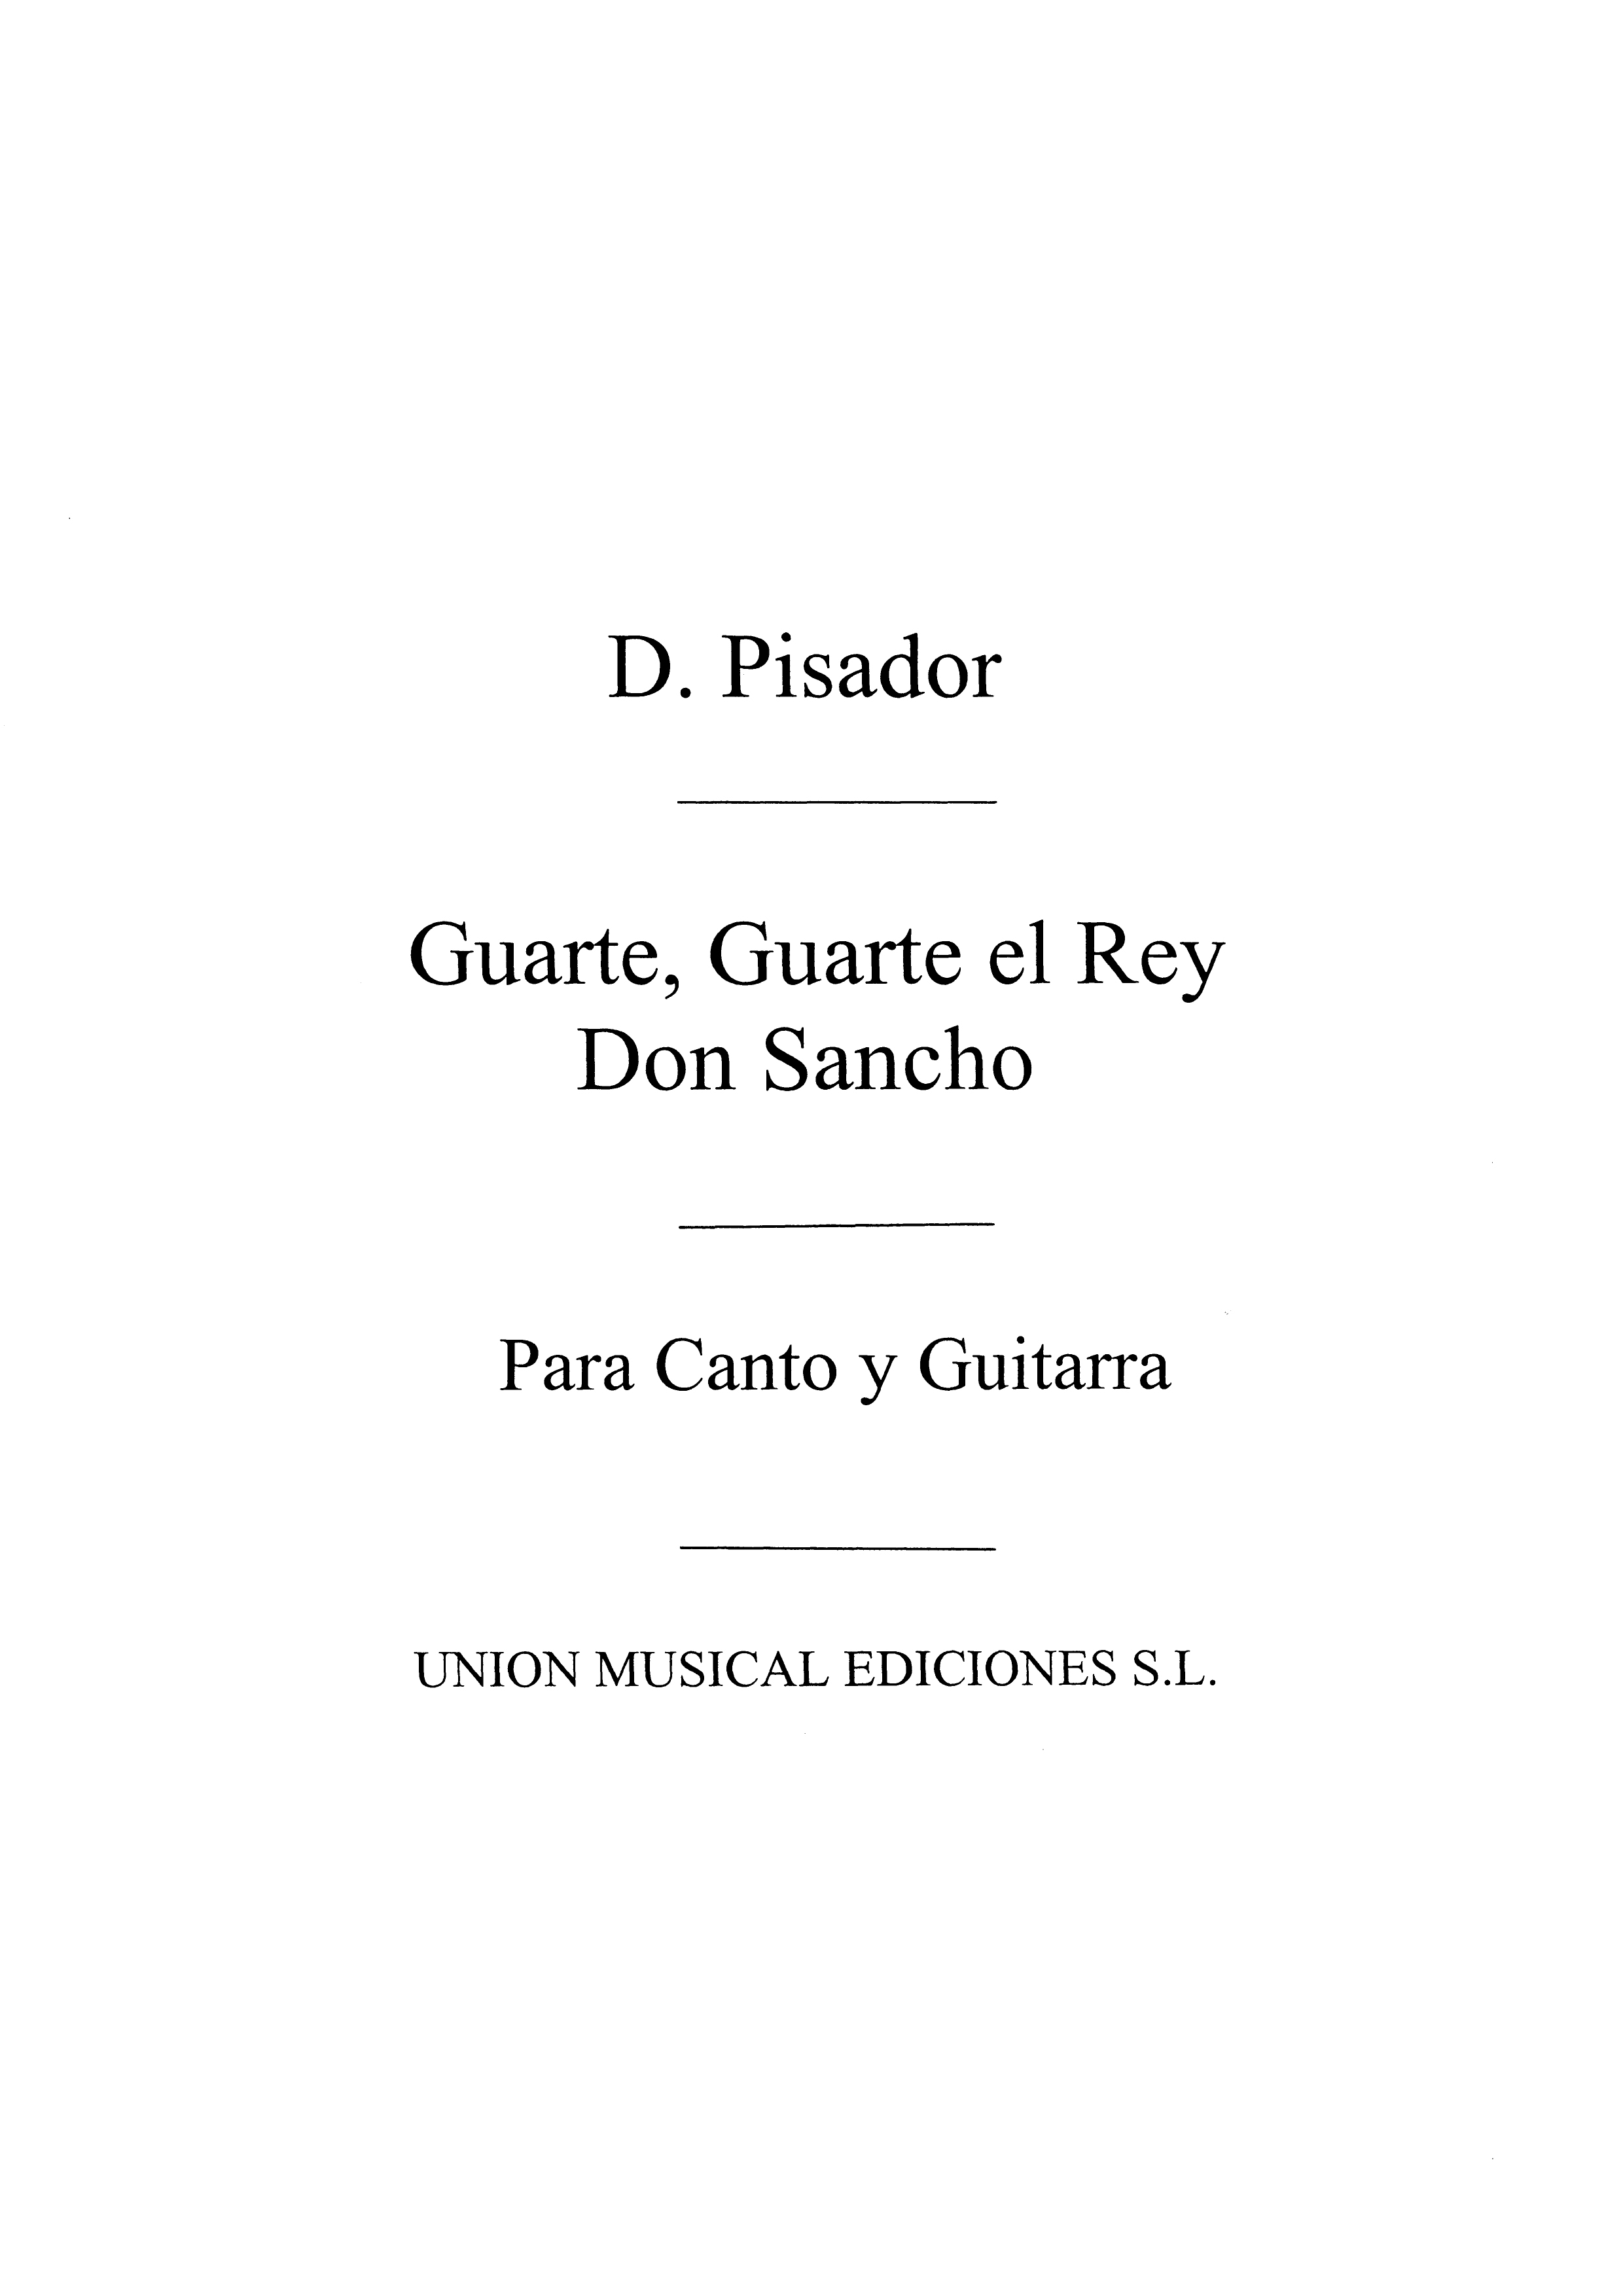 Diego Pisador: Guarte Guarte El Rey Don Sancho (Tarrago): Voice: Instrumental